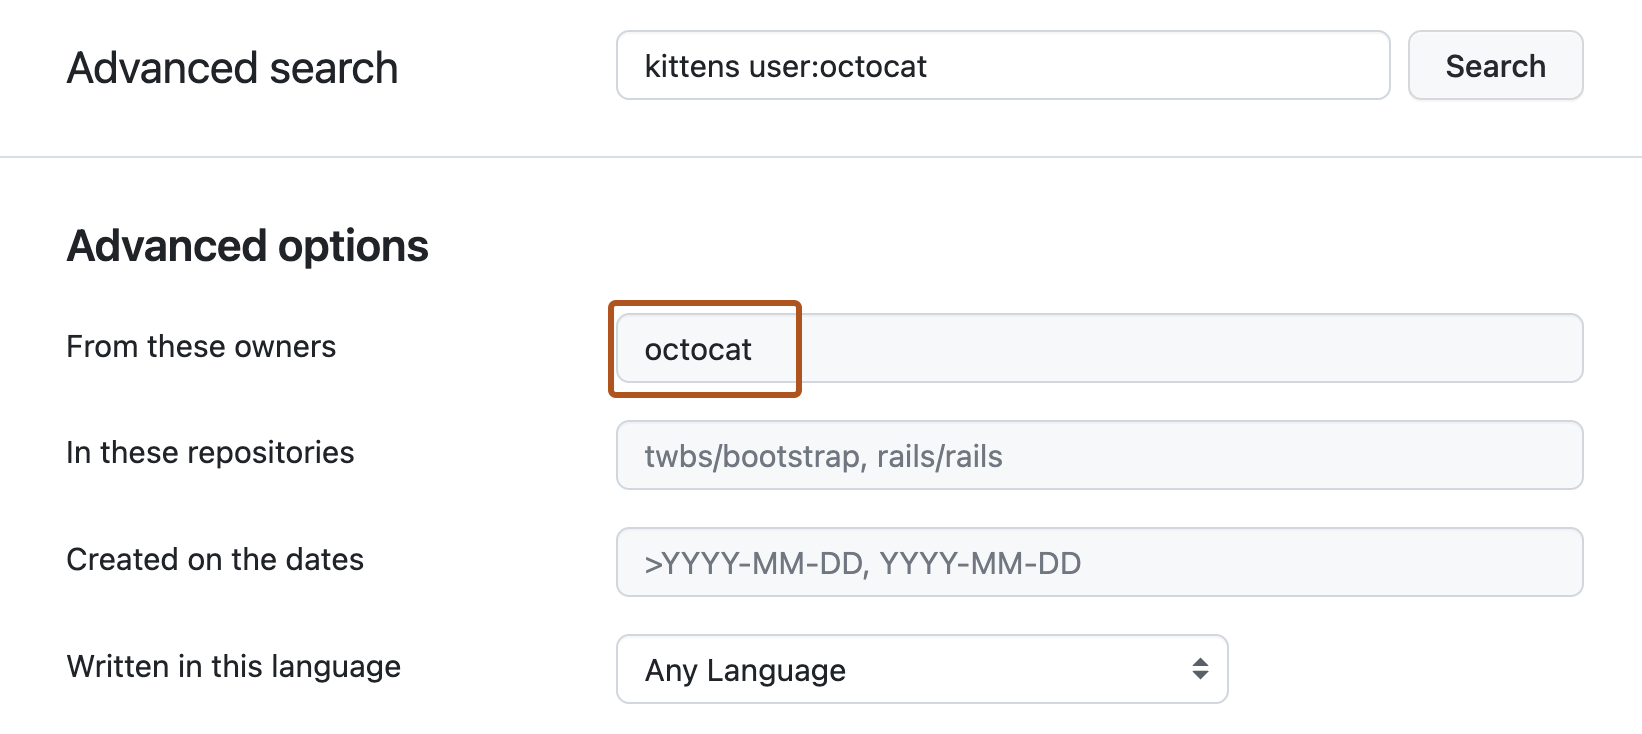 Página Búsqueda avanzada. La barra de búsqueda superior contiene la consulta “kittens user:octocat”. En “Opciones avanzadas”, el cuadro de texto “De estos propietarios” contiene el término “octocat”.